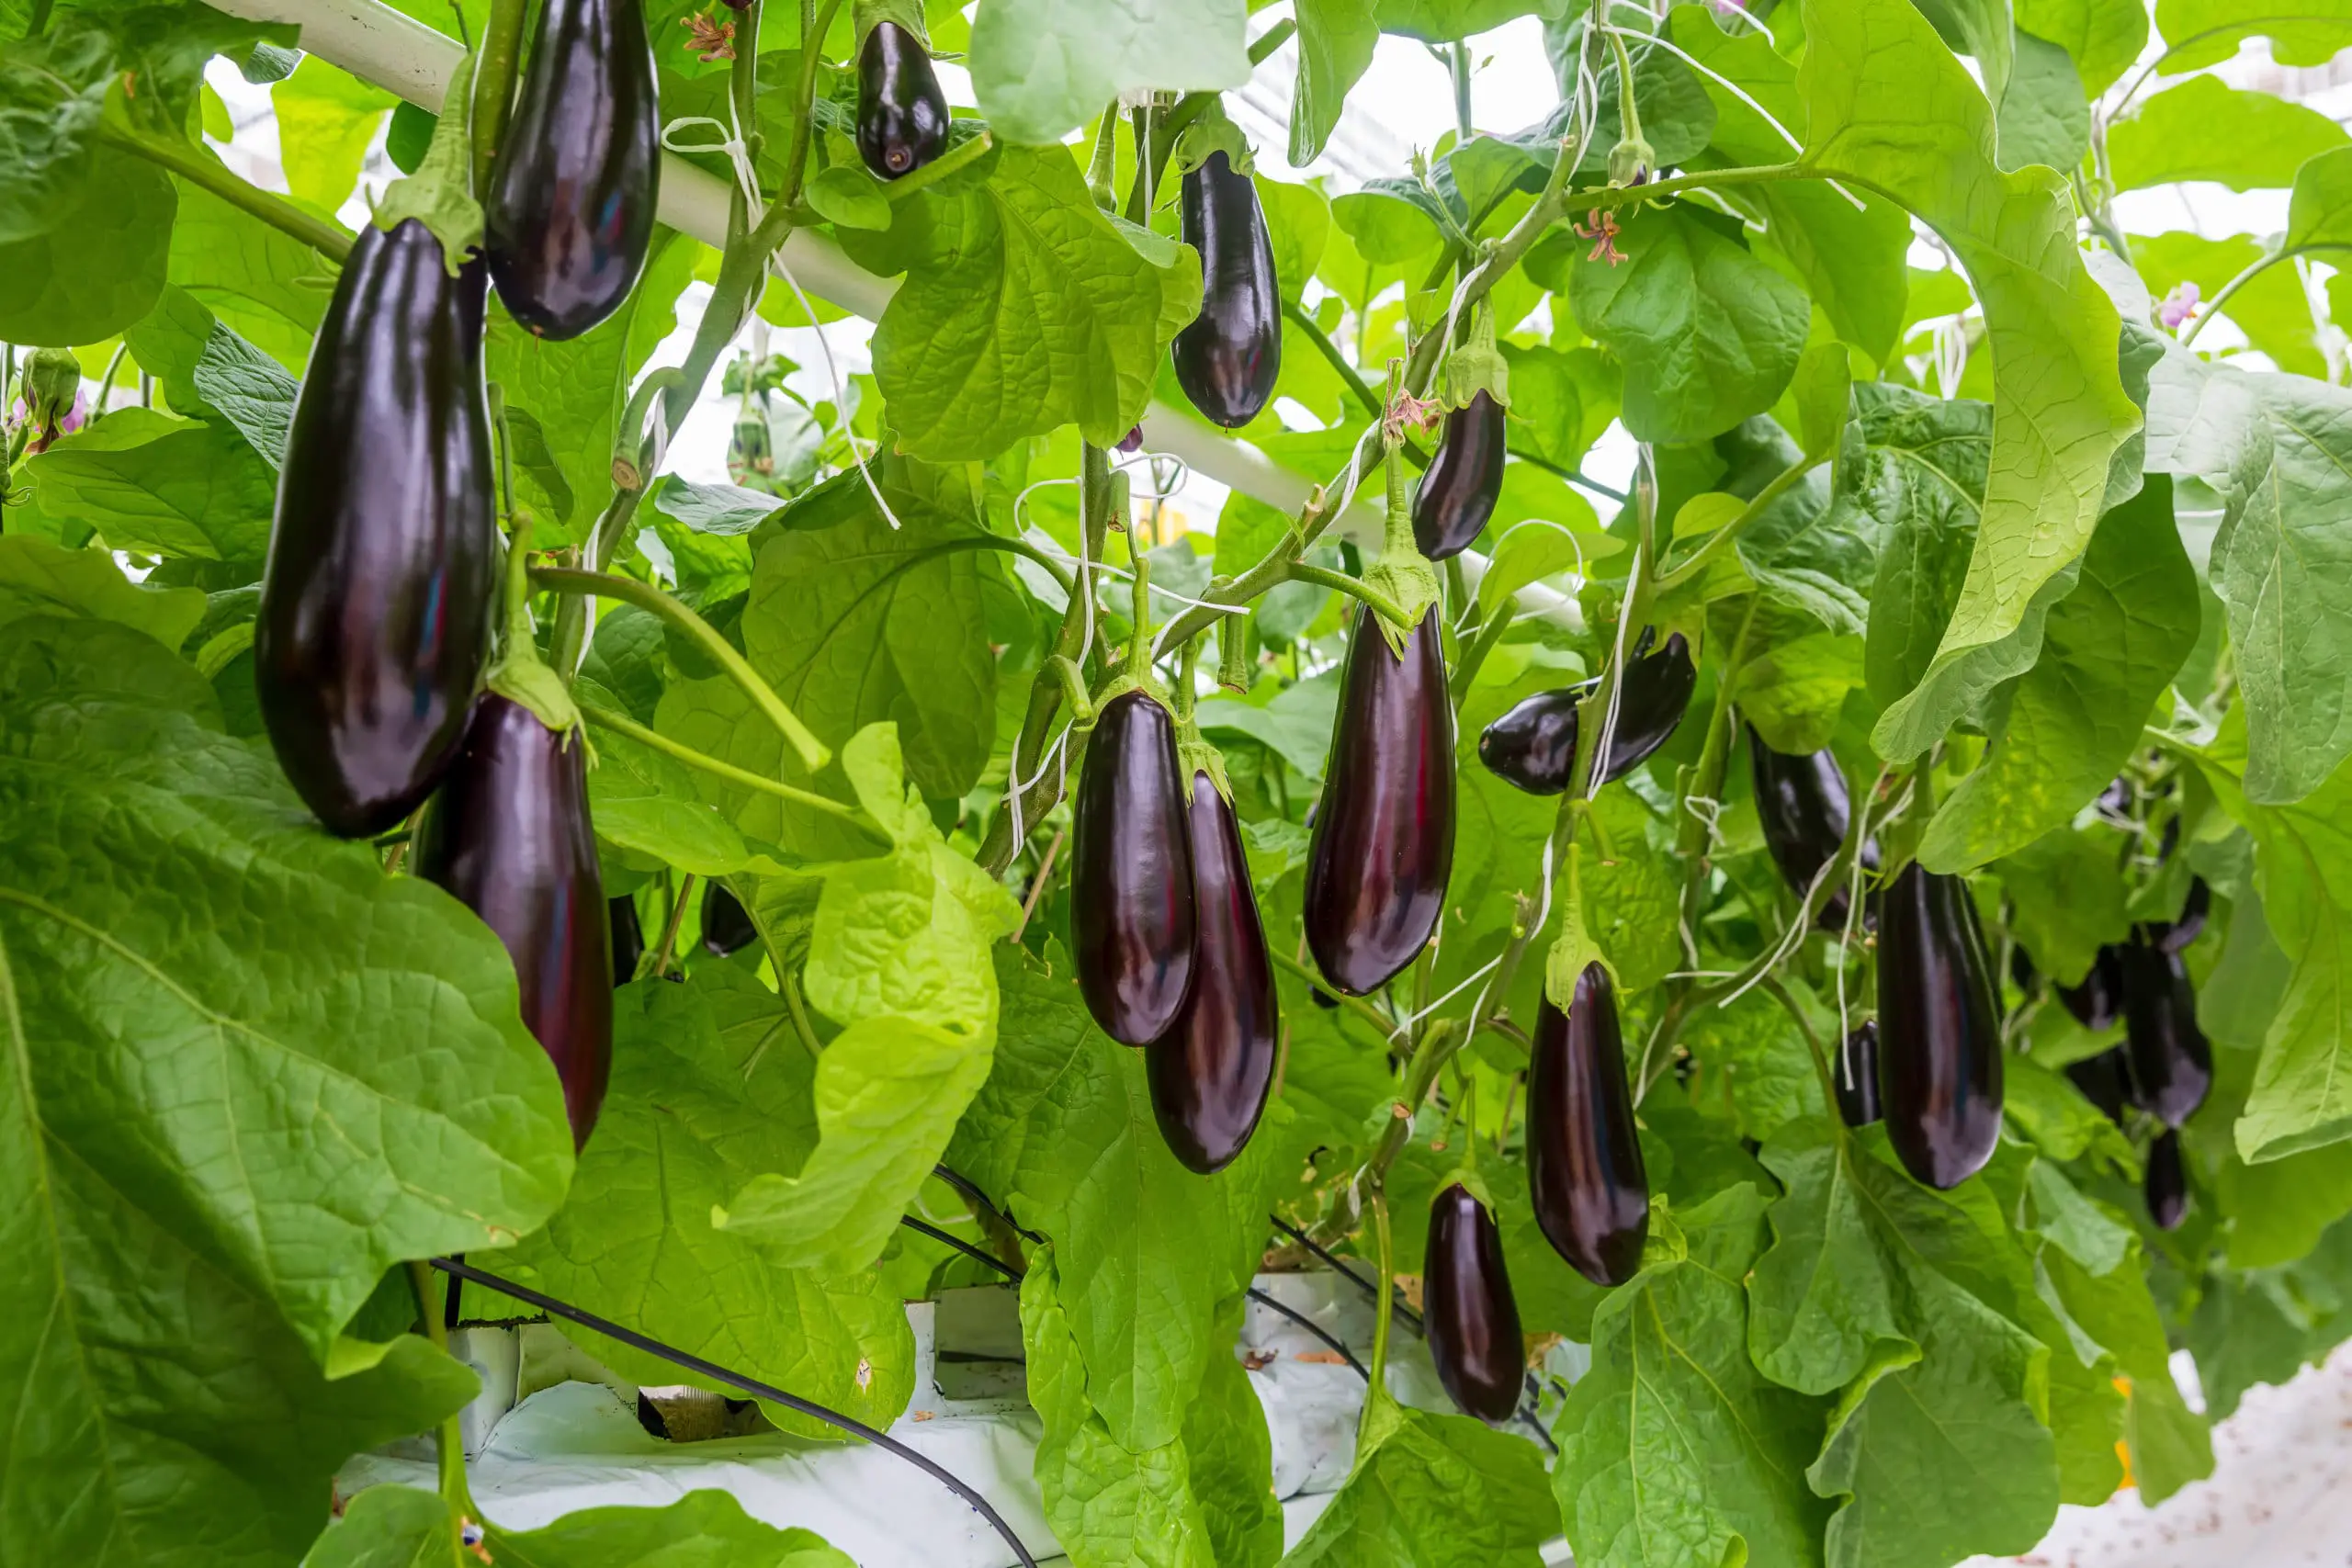 Eggplants with fruit